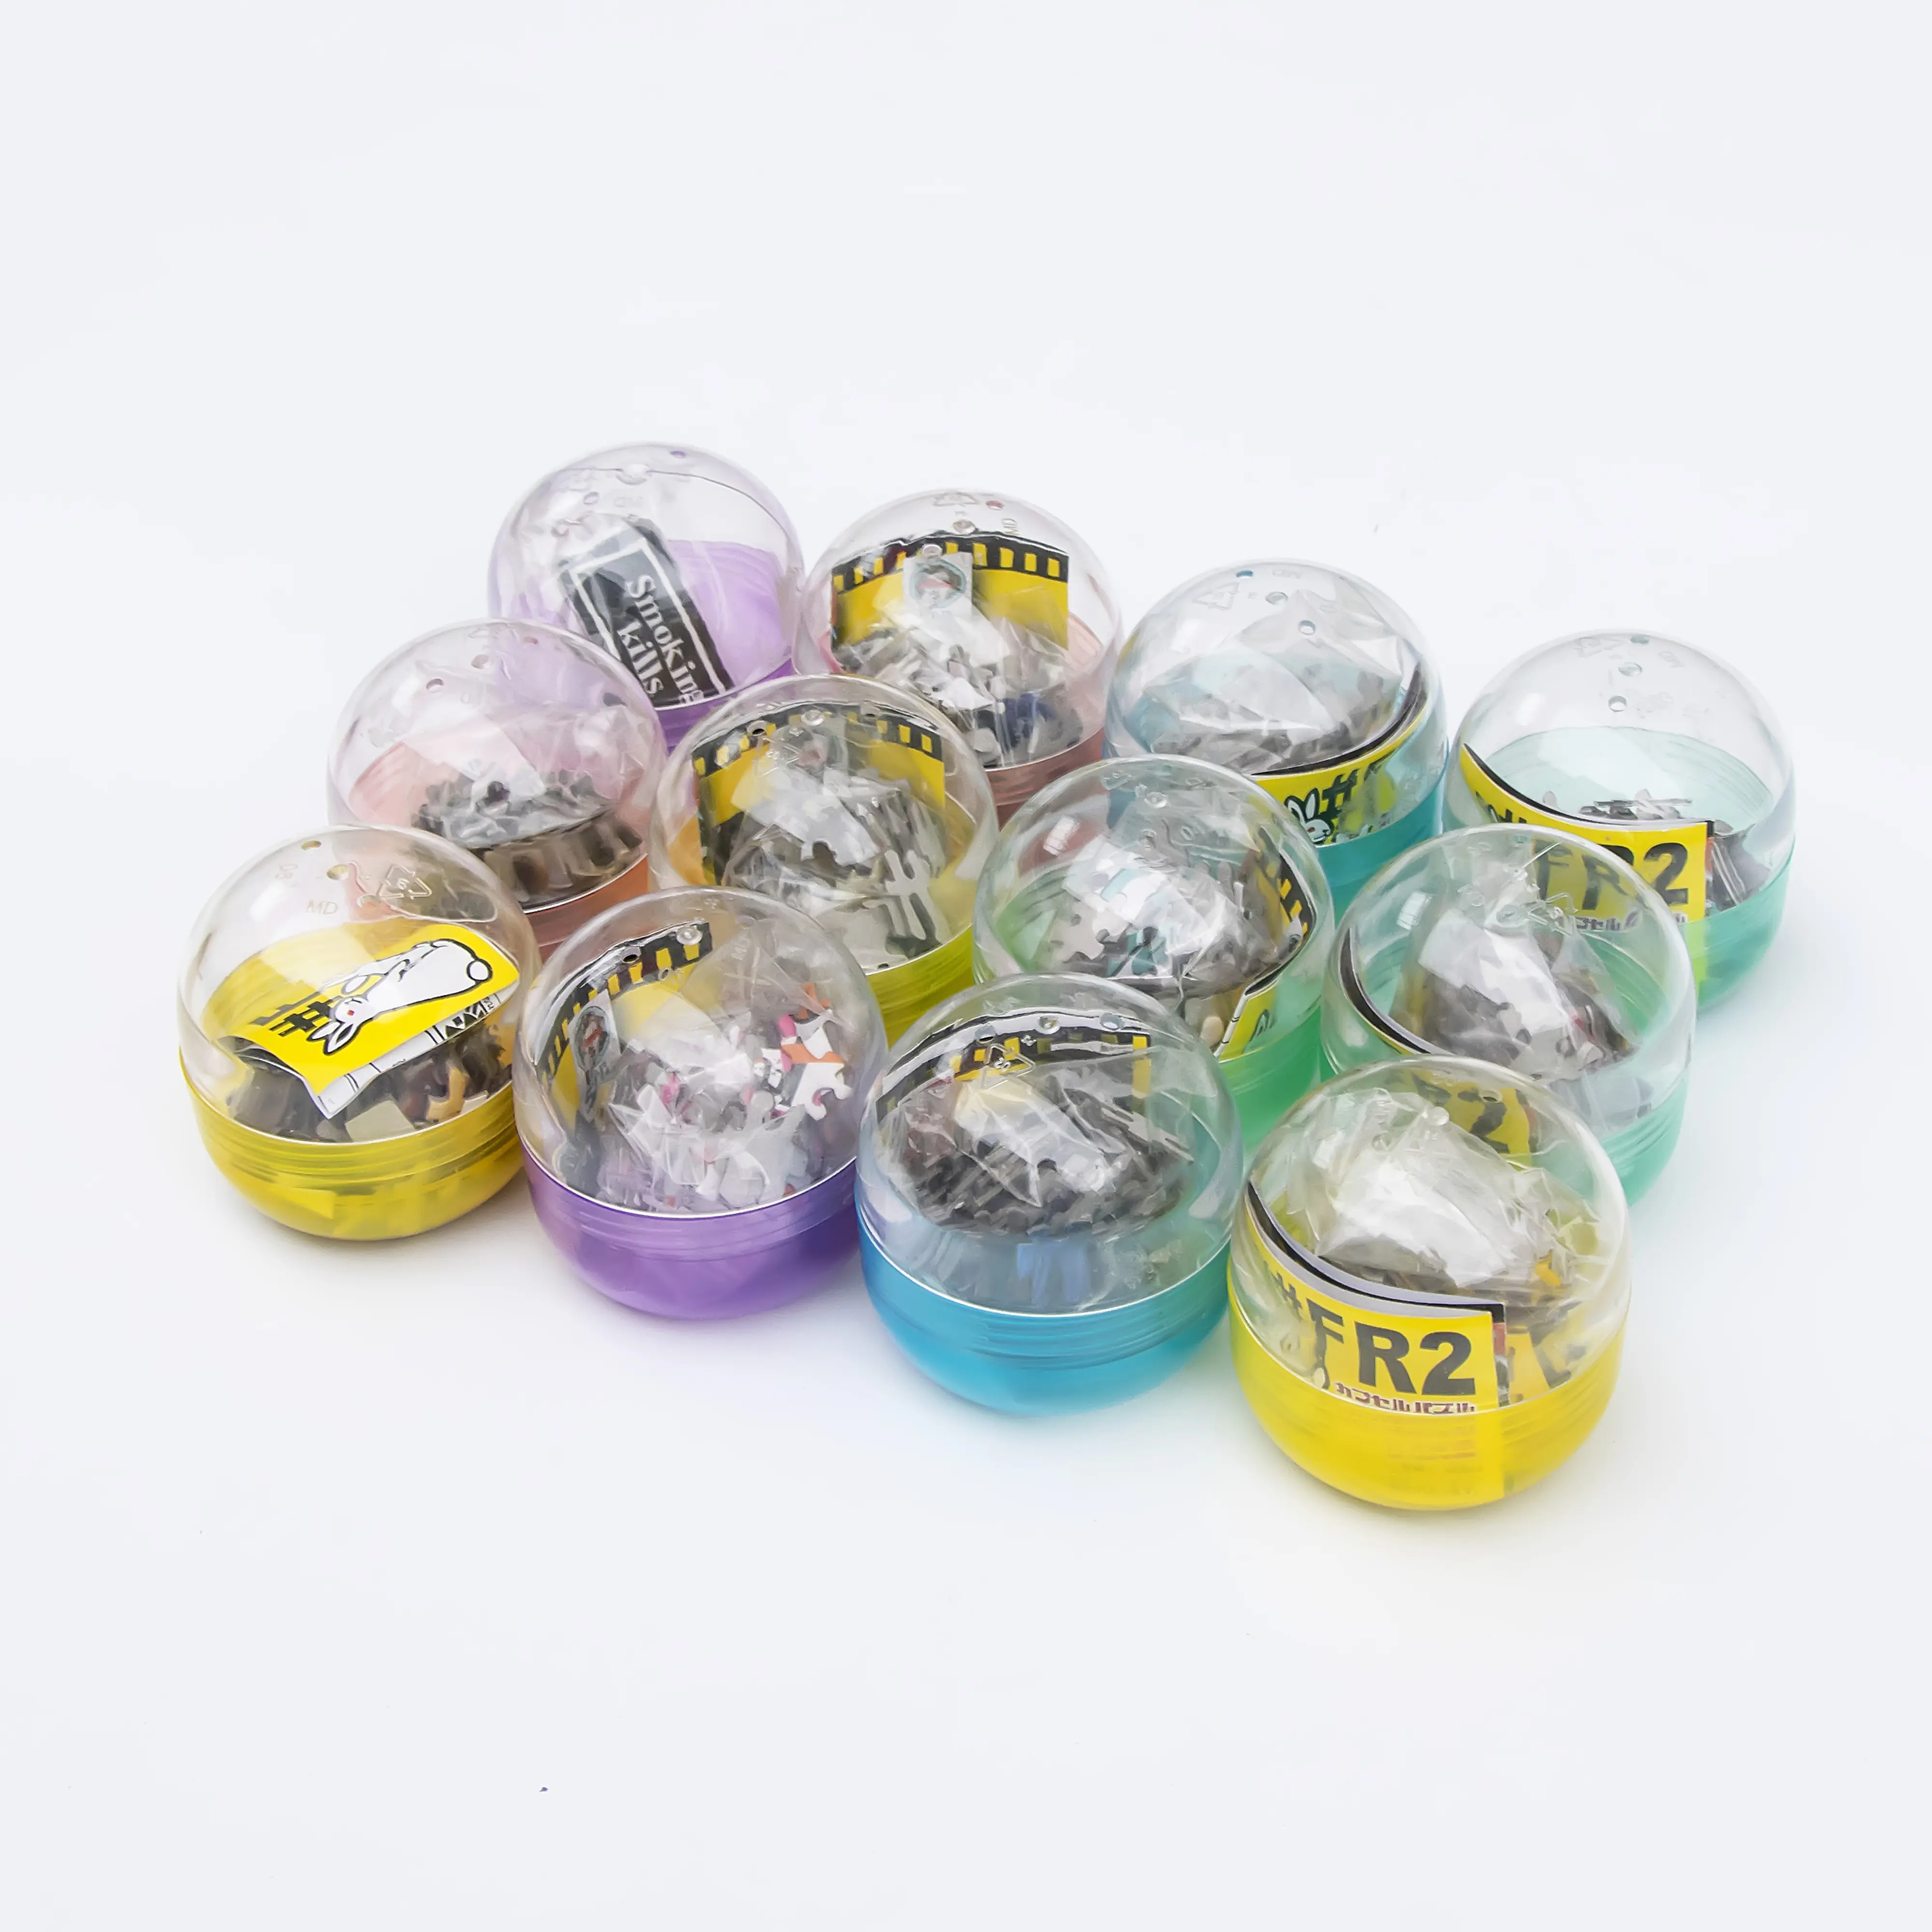 Vendita calda Twisted Smart Egg Match Puzzle insegnamento giocattolo educativo precoce per bambini Puzzle capsula giocattolo personalizzato